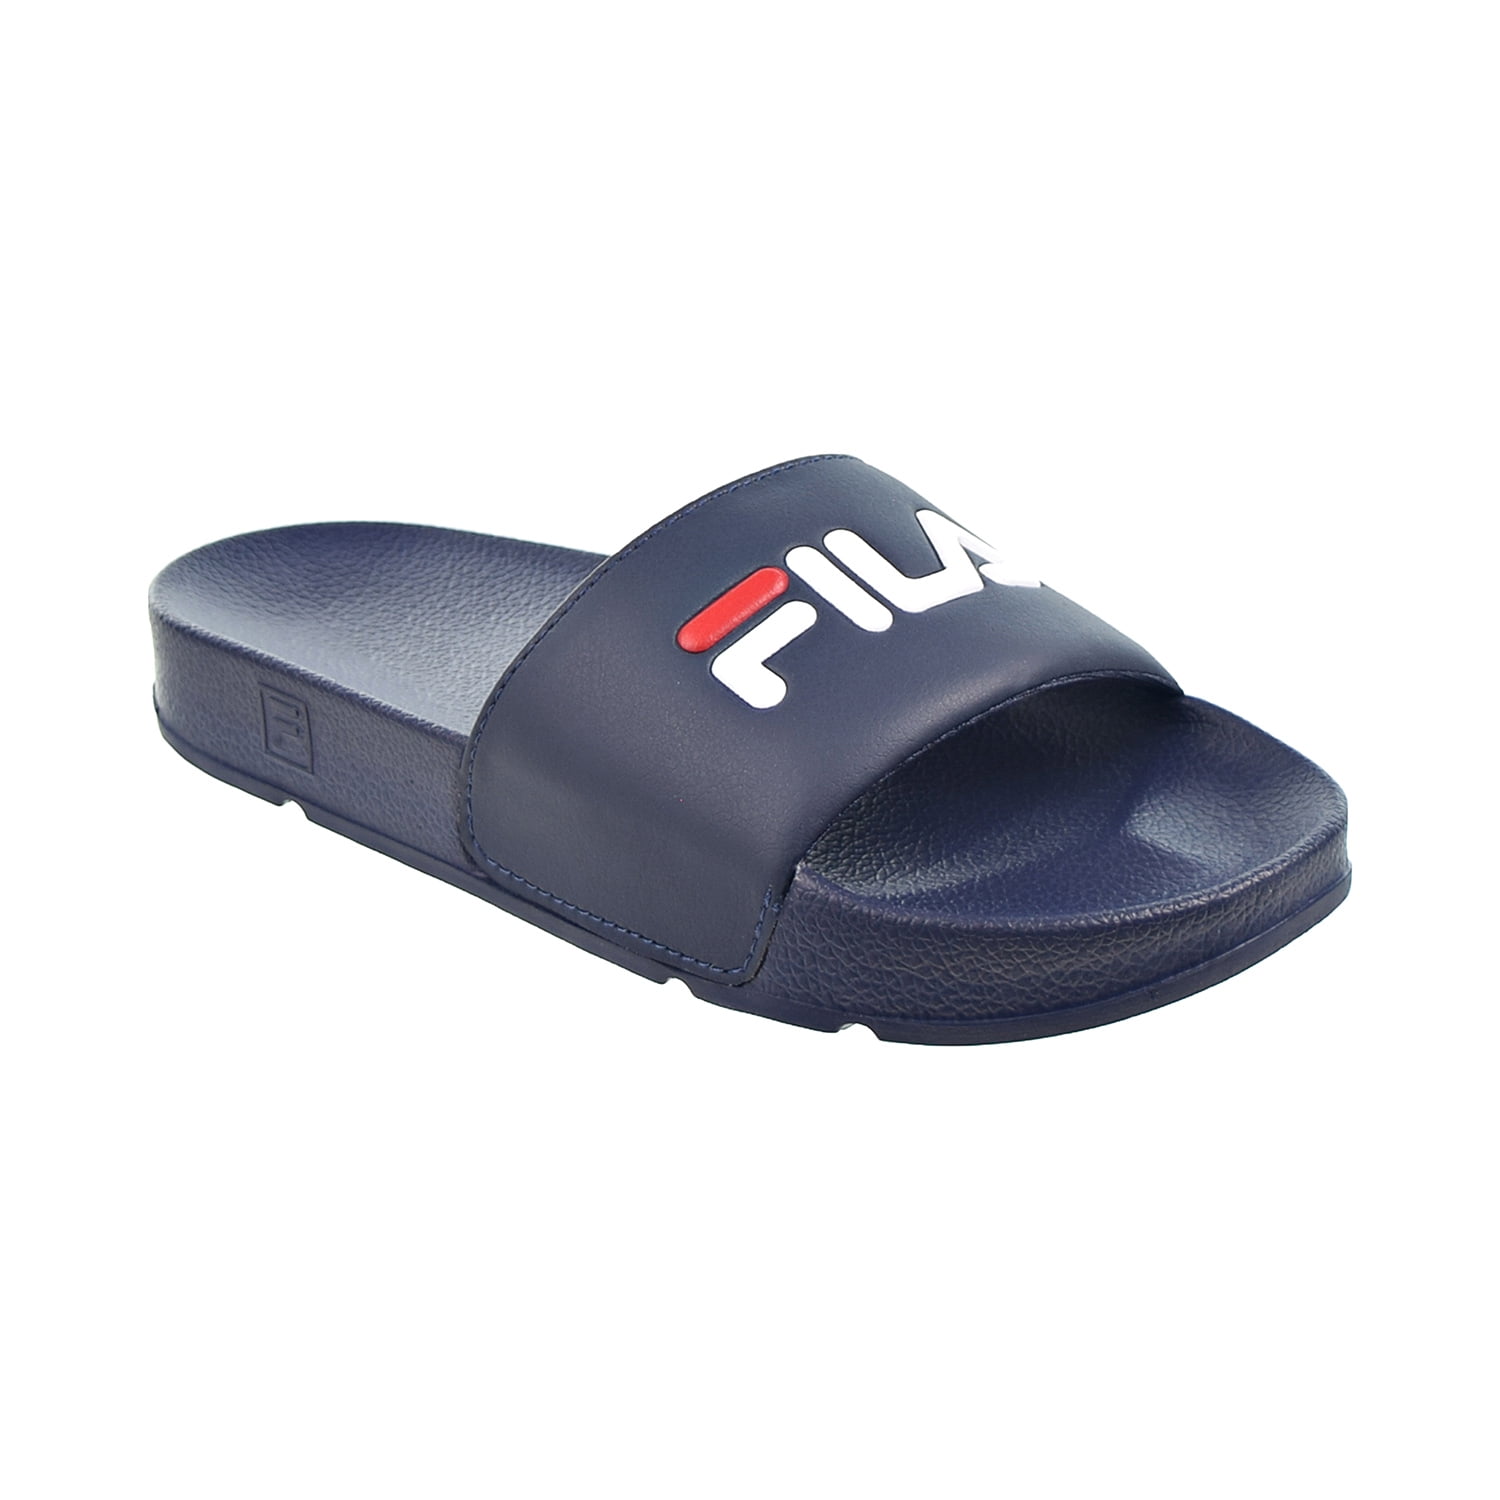 Fila Drifter Men's Sandals Navy-Red-White 1vs10000-422 - Walmart.com